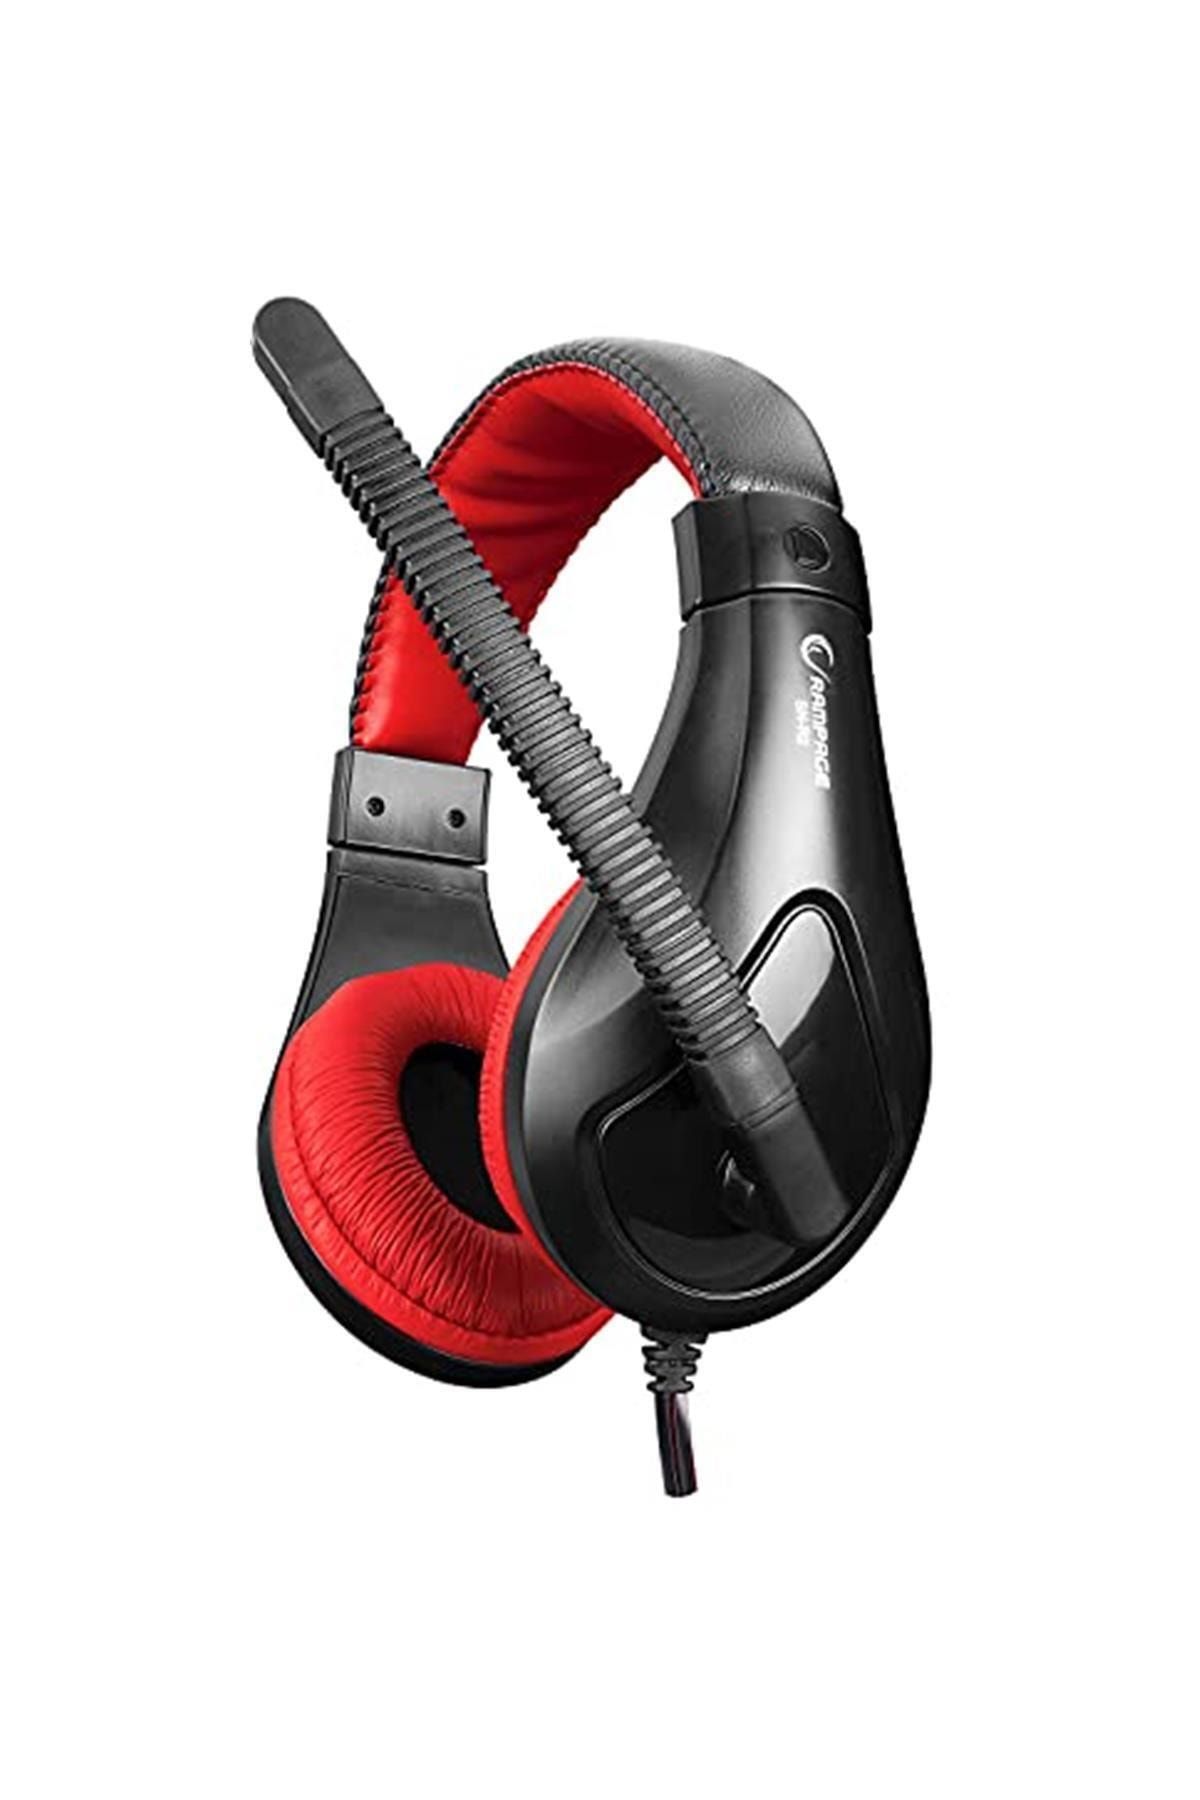 Rampage Marka: Sn-r2 Siyah/kırmızı Oyuncu Mikrofonlu Kulaklık Kategori: Mikrofon Uyumlu